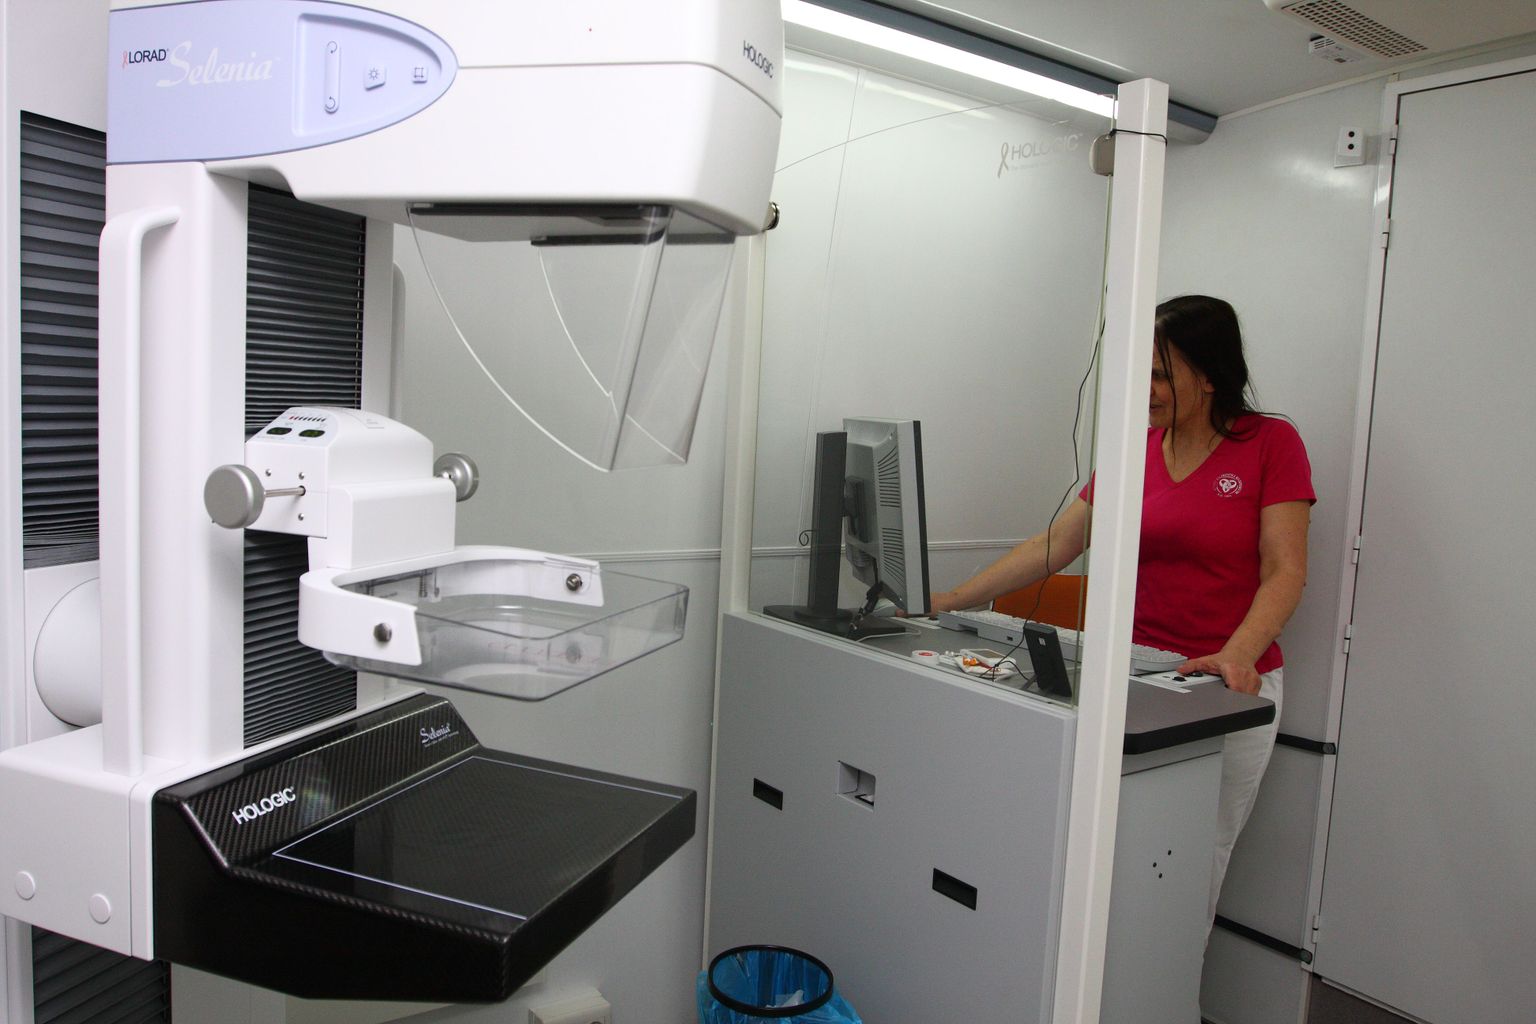 Uuring, mida naisele mammograafiabussis tehakse, on valutu ega tekita ebameeldivust. Rind asetatakse plaatide vahele ja tehakse kaks ülesvõtet: põikipidi ja ülevalt alla. Protseduur võtab aega mõne minuti.